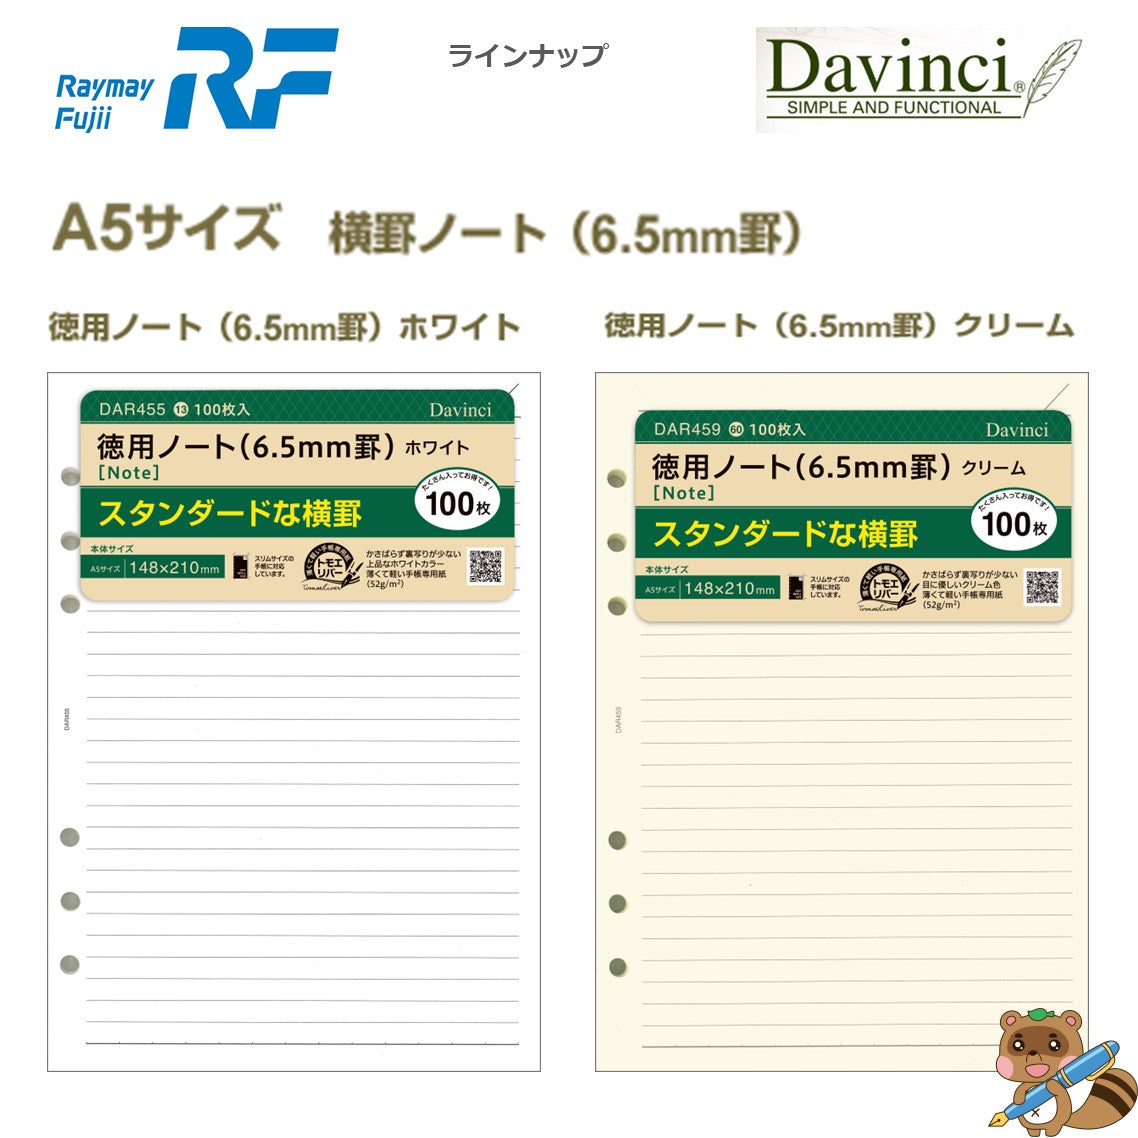 ダヴィンチ リフィル (A5) 徳用ノート 6.5㎜罫 クリーム
DAR459